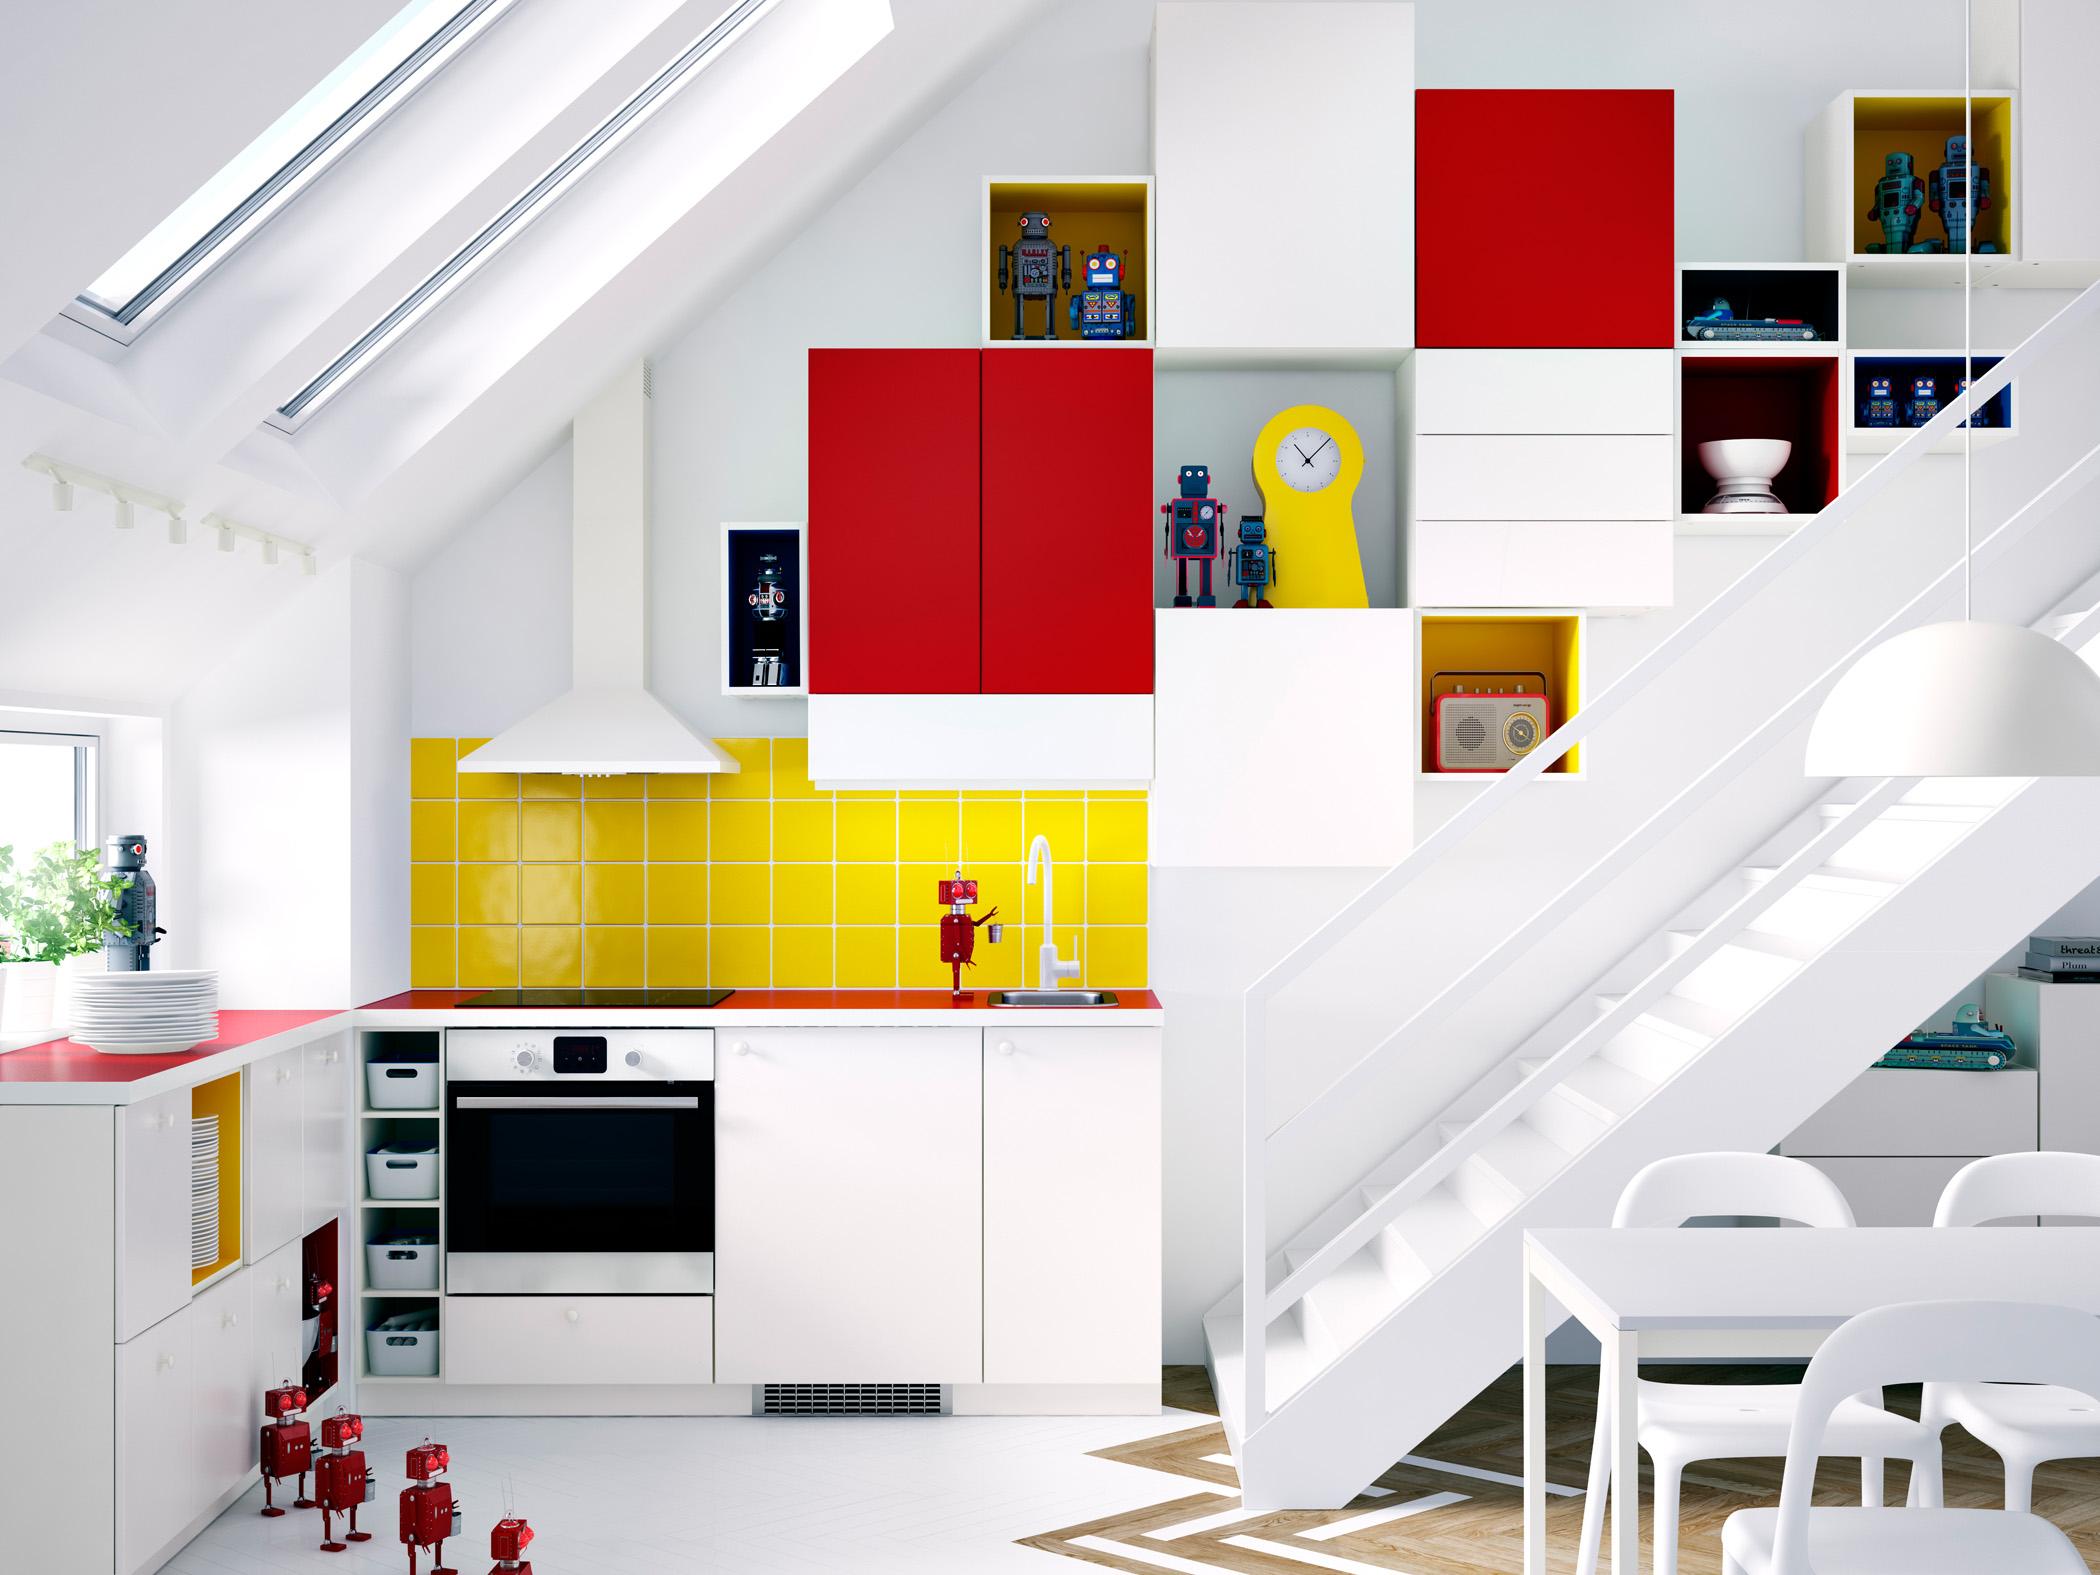 Gelb und Rot in der Küche #stuhl #dachschräge #esstisch #hängeschrank #ikea #weißerstuhl #weißerküchenschrank #dachschrägenfenster ©Inter IKEA Systems B.V.